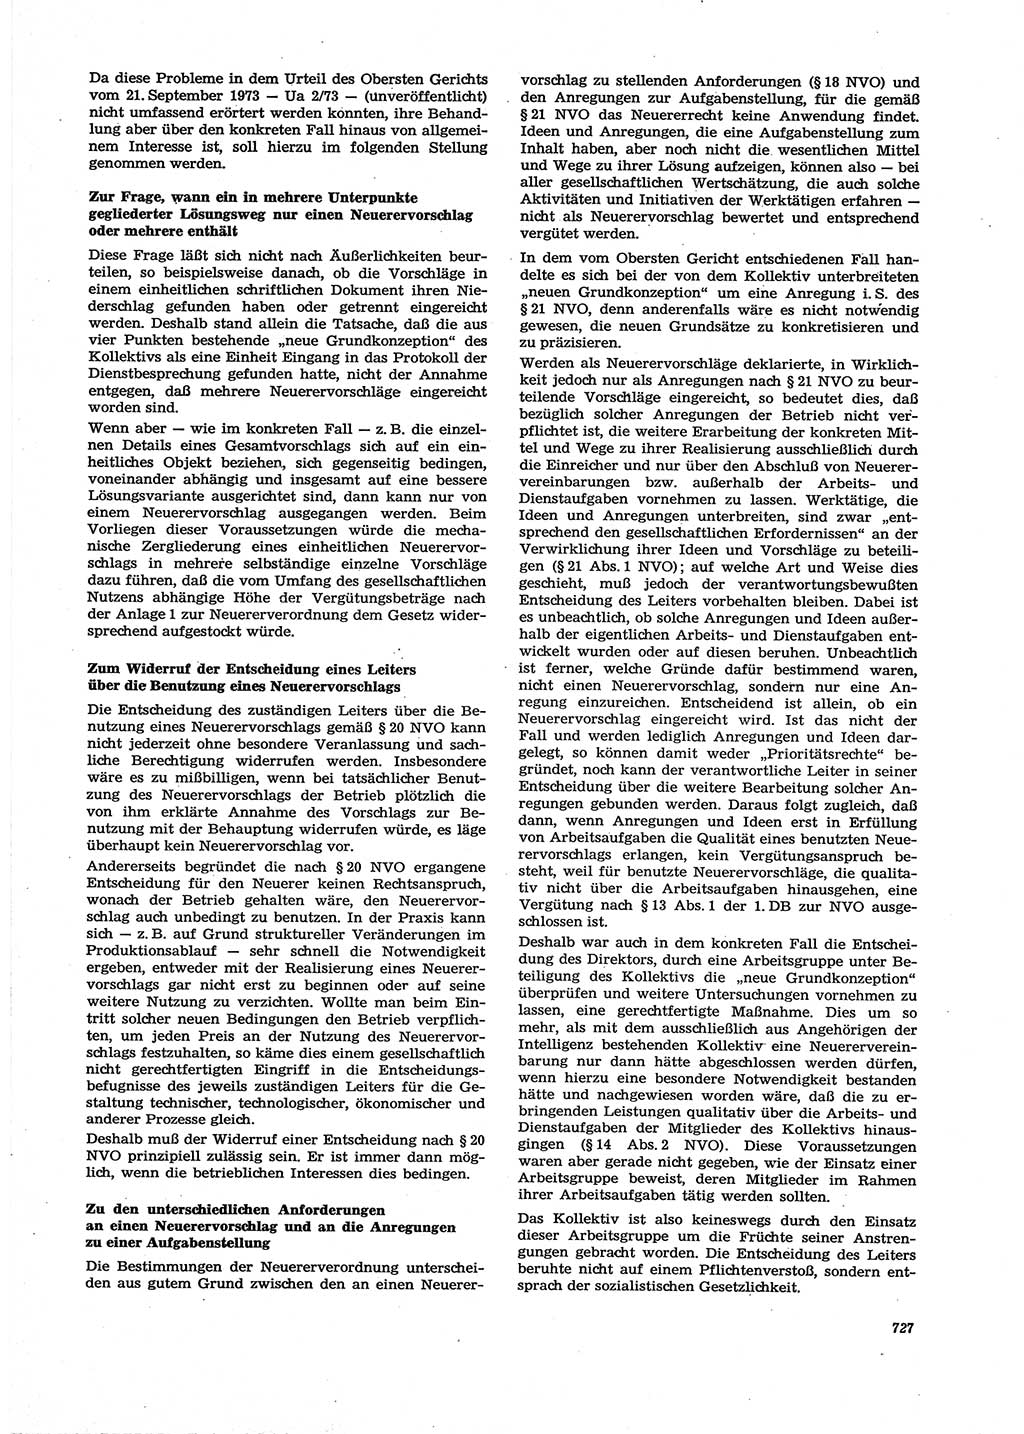 Neue Justiz (NJ), Zeitschrift für Recht und Rechtswissenschaft [Deutsche Demokratische Republik (DDR)], 27. Jahrgang 1973, Seite 727 (NJ DDR 1973, S. 727)